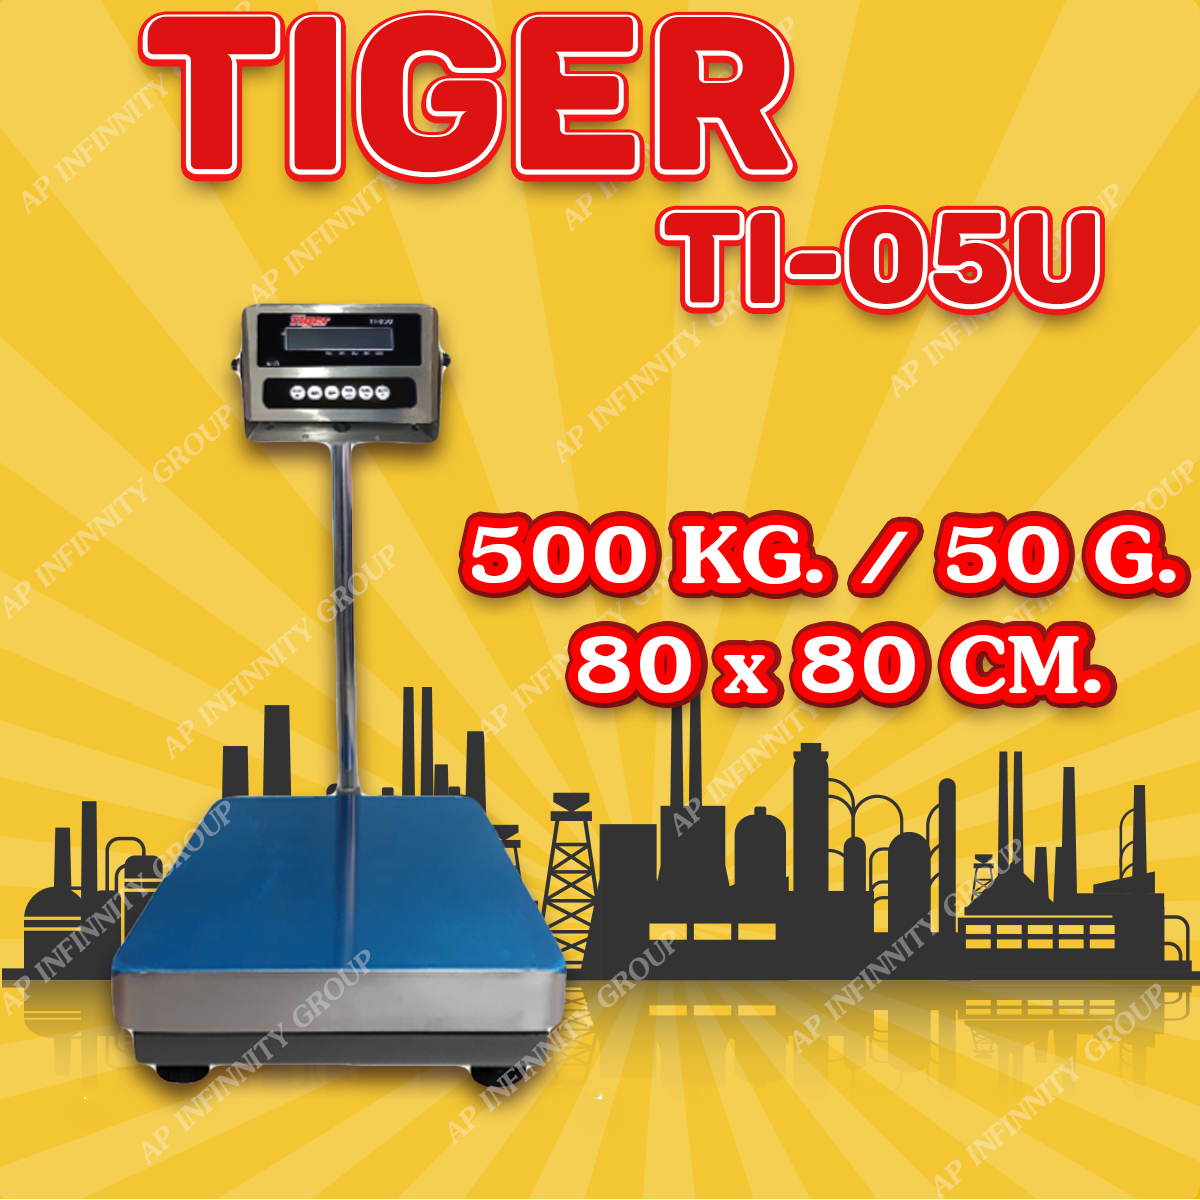 ตาชั่งดิจิตอล เครื่องชั่งดิจิตอล เครื่องชั่งตั้งพื้น 750kg ความละเอียด 100g ยี่ห้อ Tiger รุ่น TI–05U แท่นชั่งขนาดฐาน 80x80cm มีช่อง USB สำหรับการบันทึกข้อมูลได้ รูปที่ 1